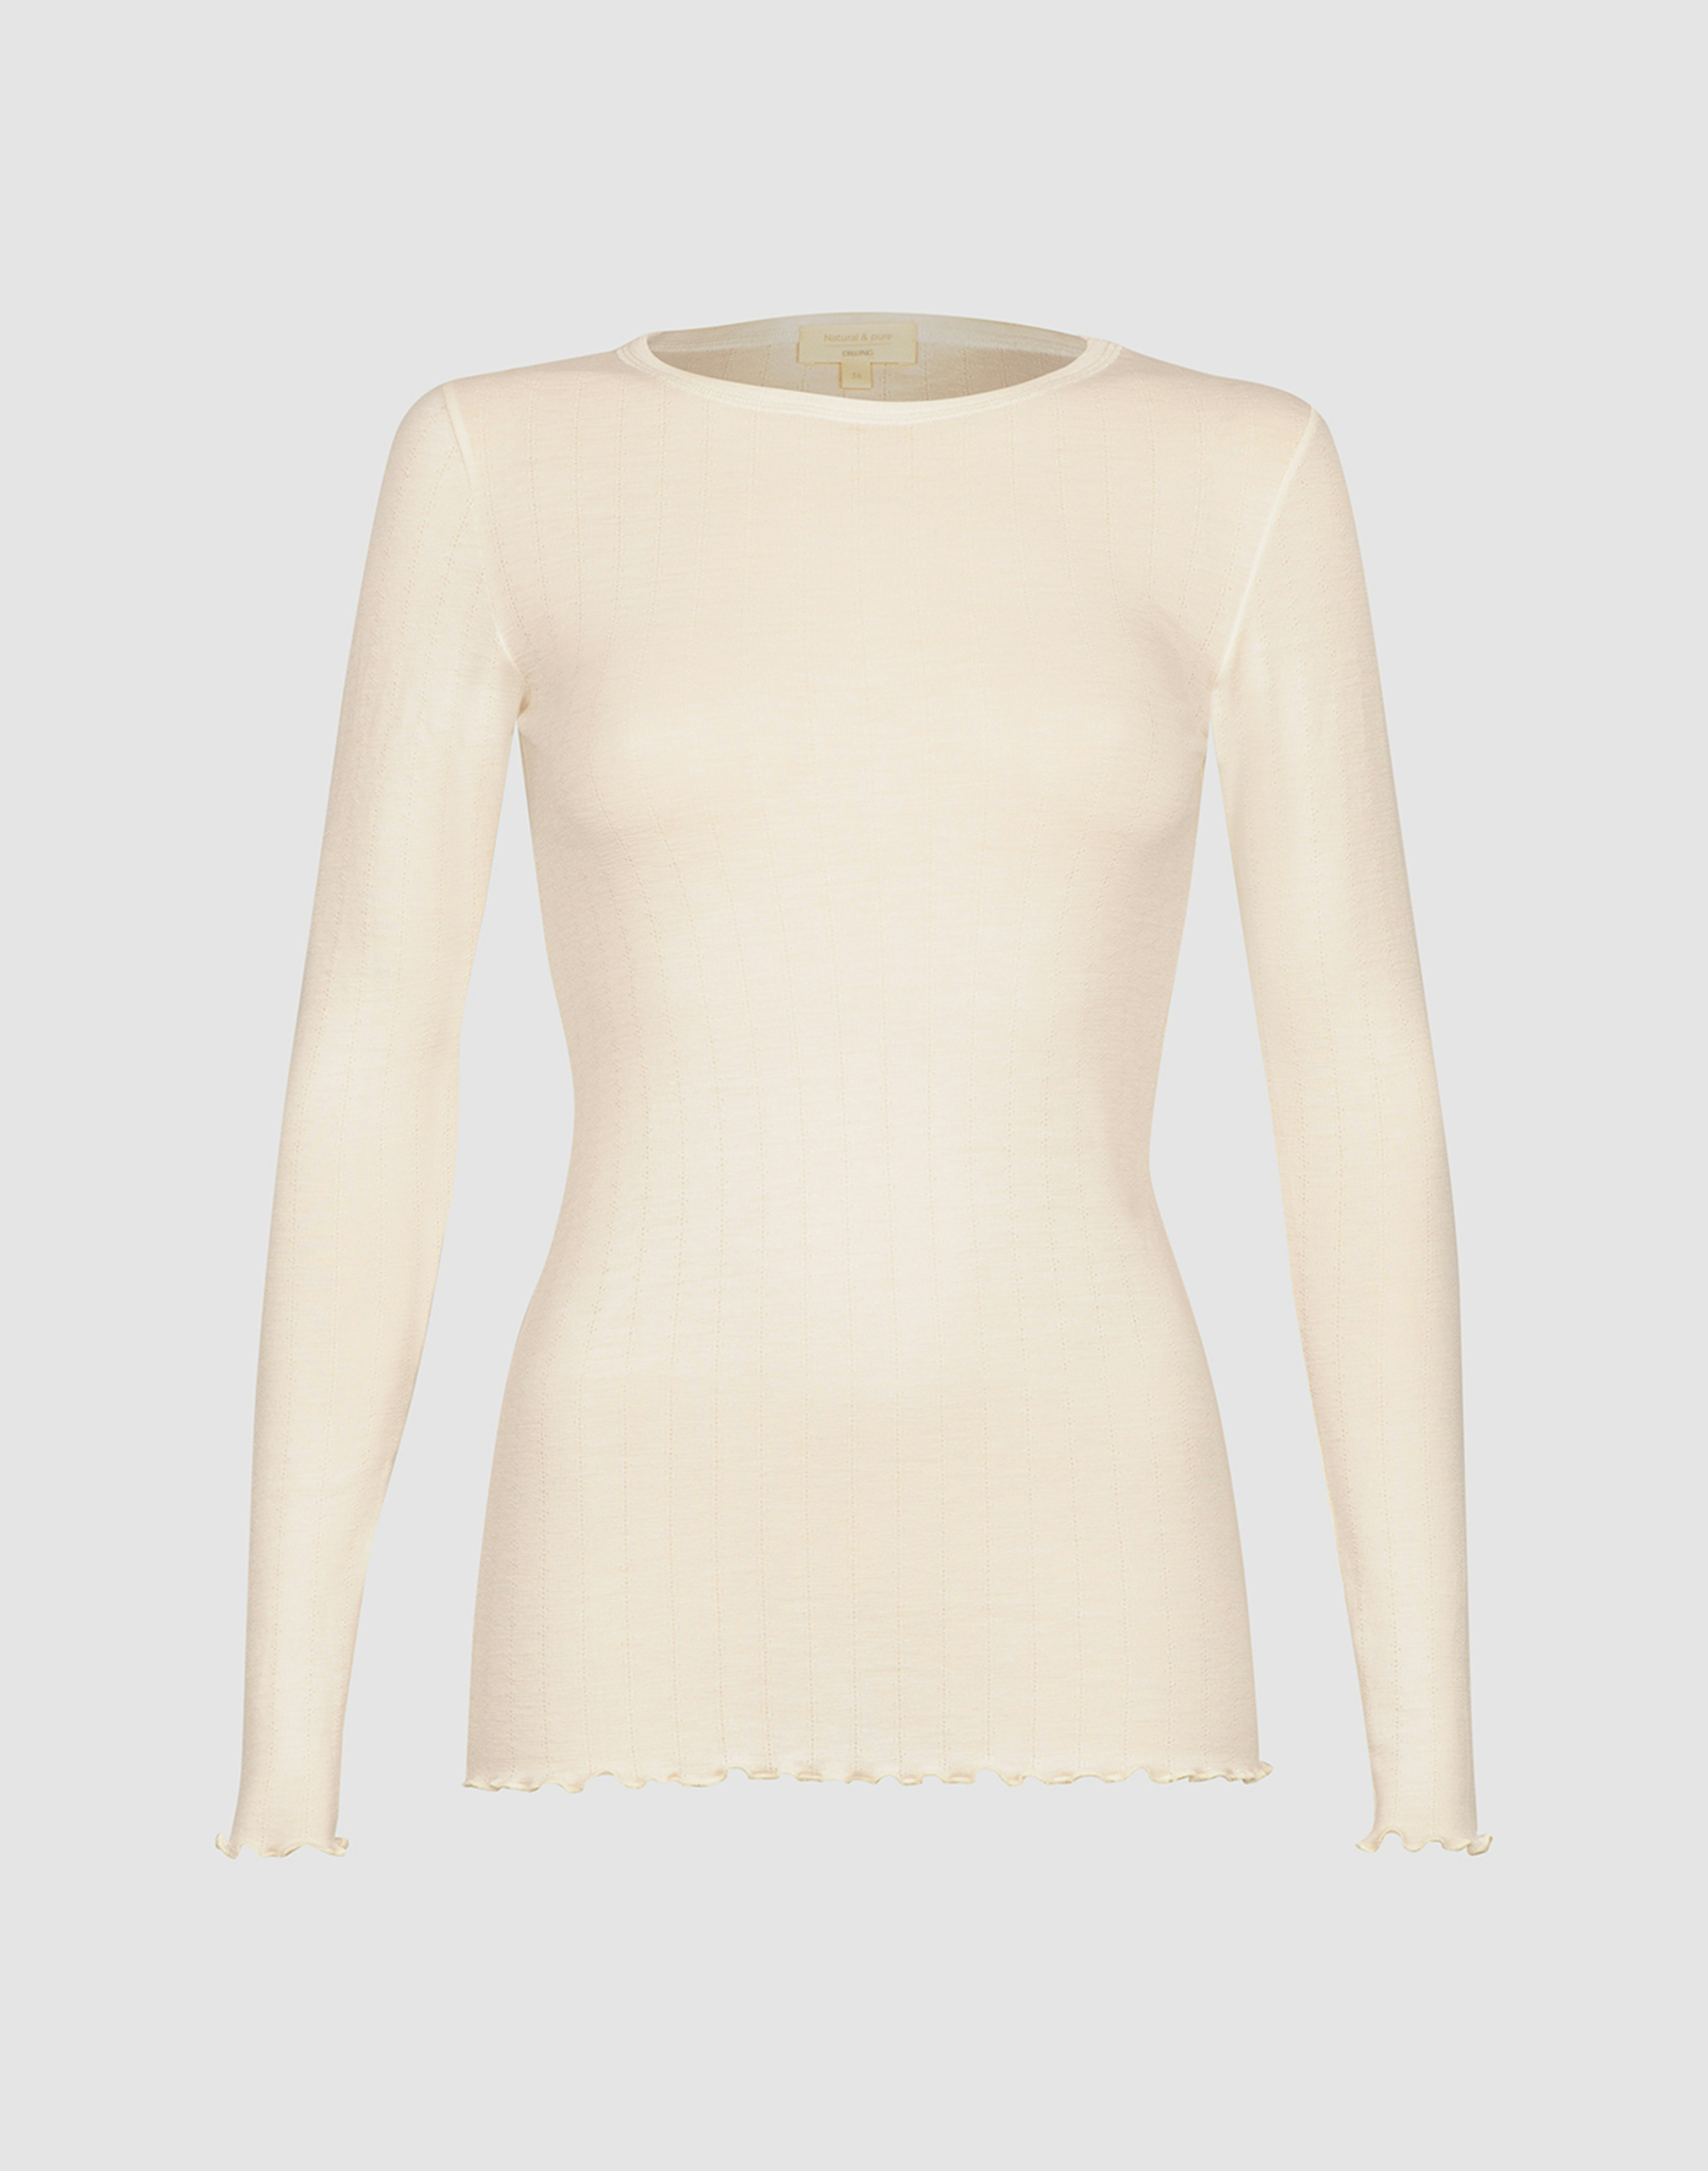 Women's merino wool/silk long sleeve pointelle top